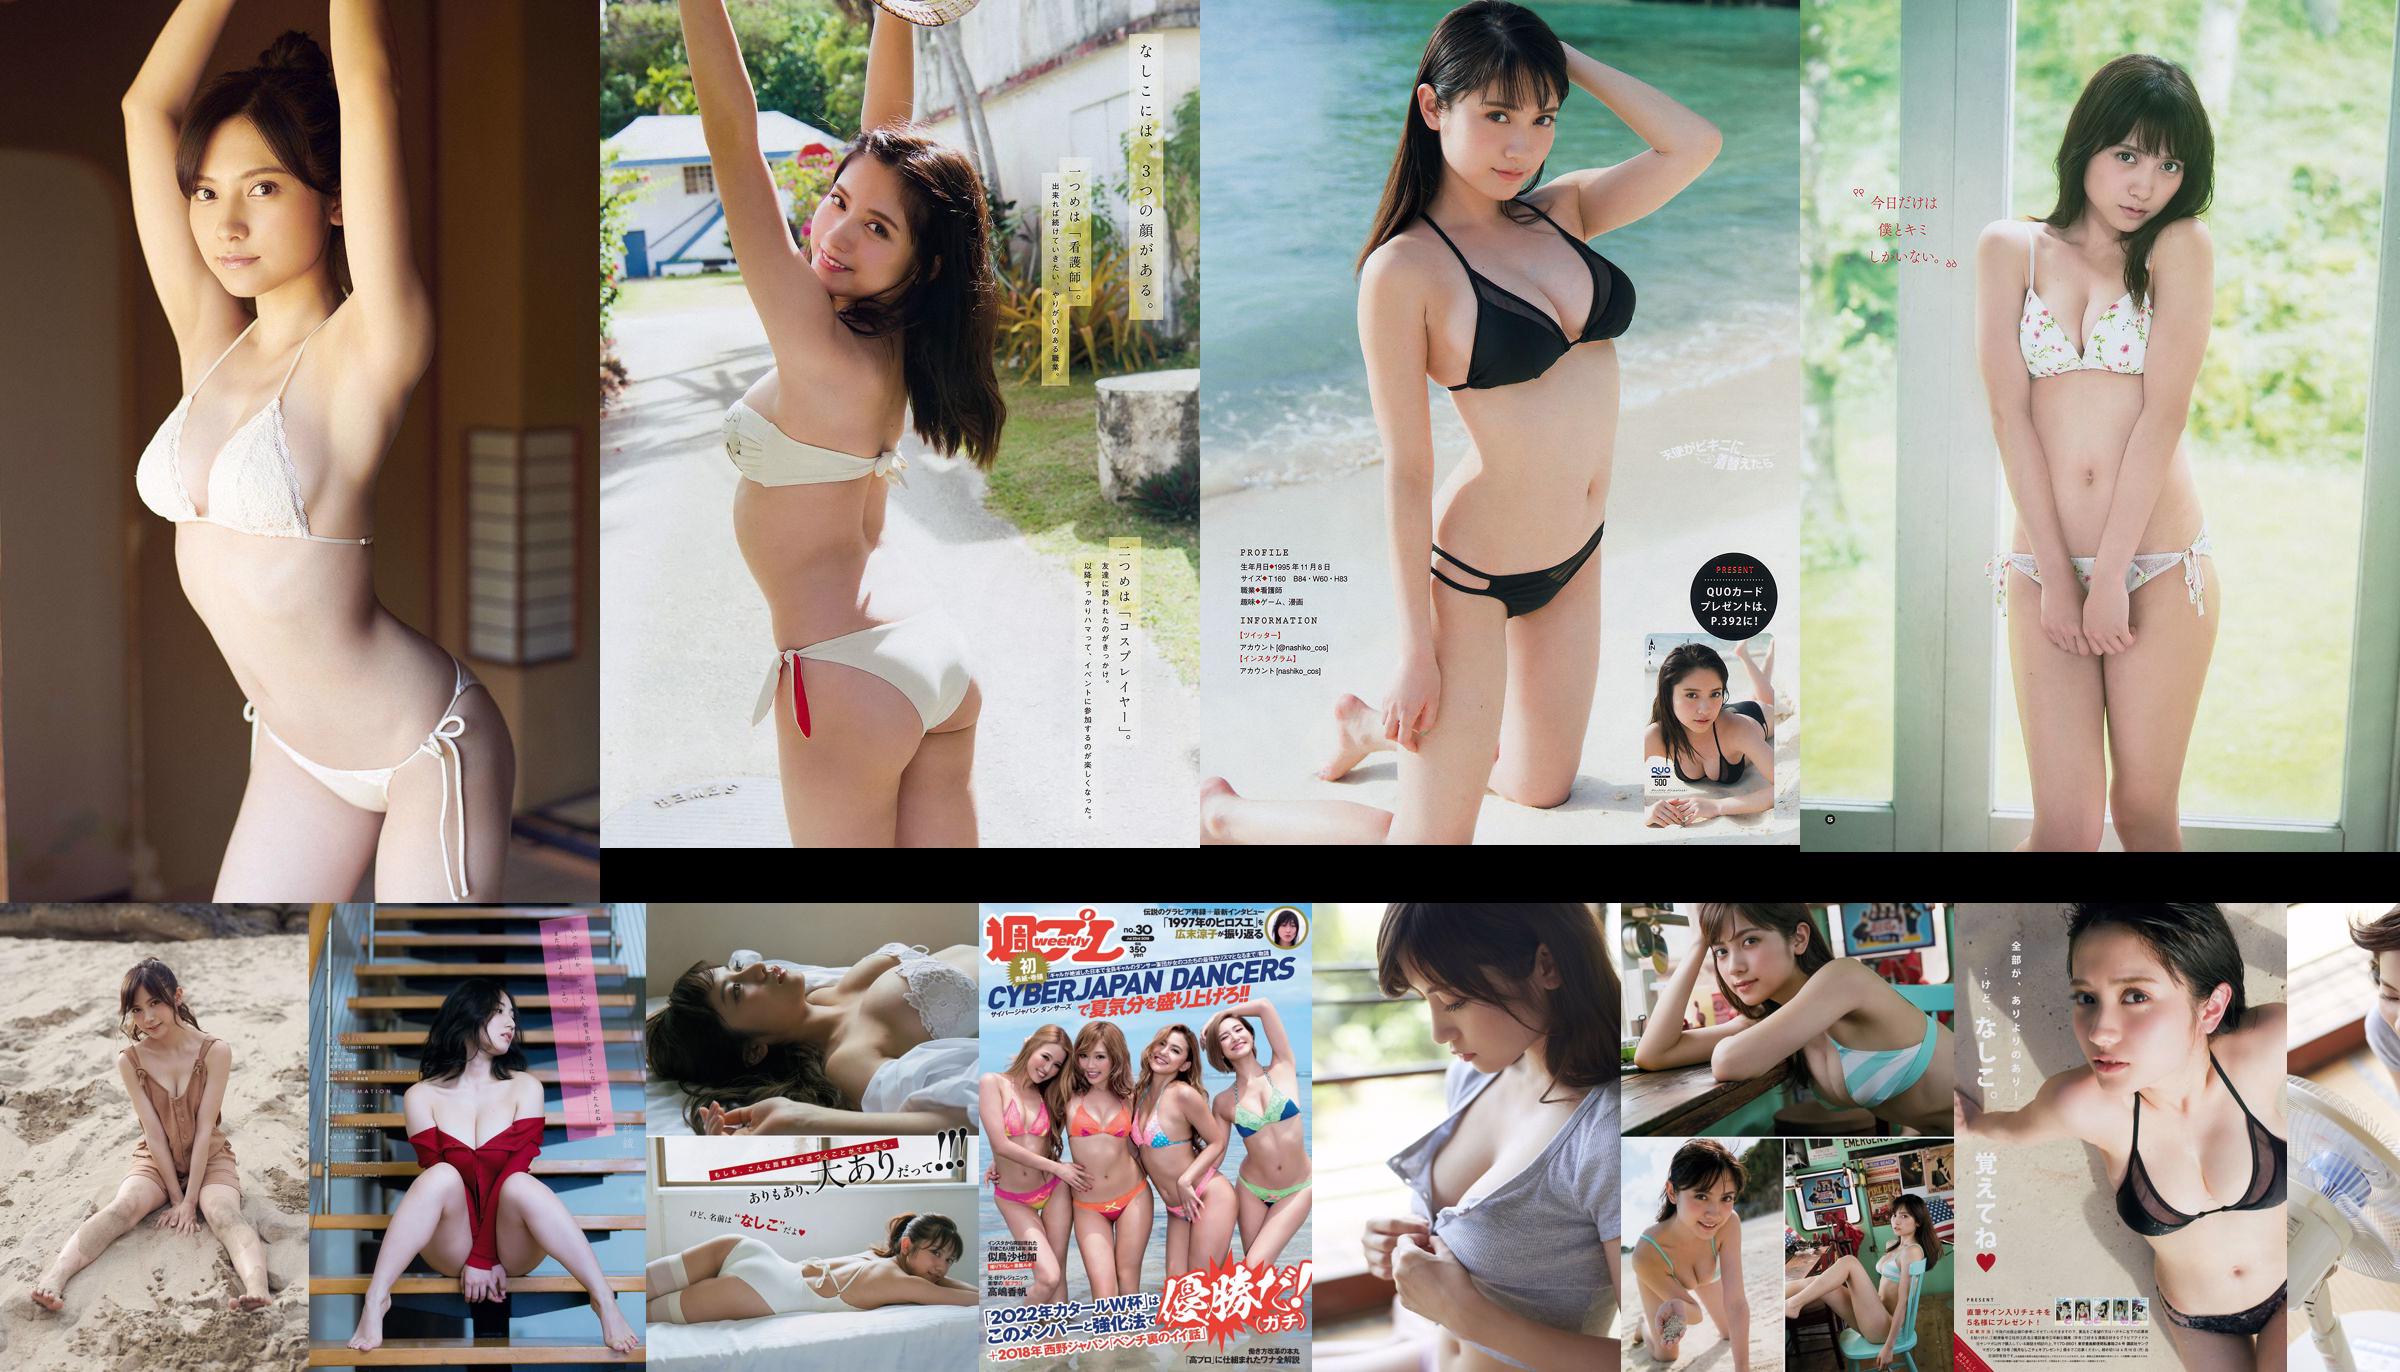 [Jeune gangan] Nashiko Momotsuki Nashiko Saki, Rena Kuroki 2018 n ° 19 Photo No.4bf6fb Page 7